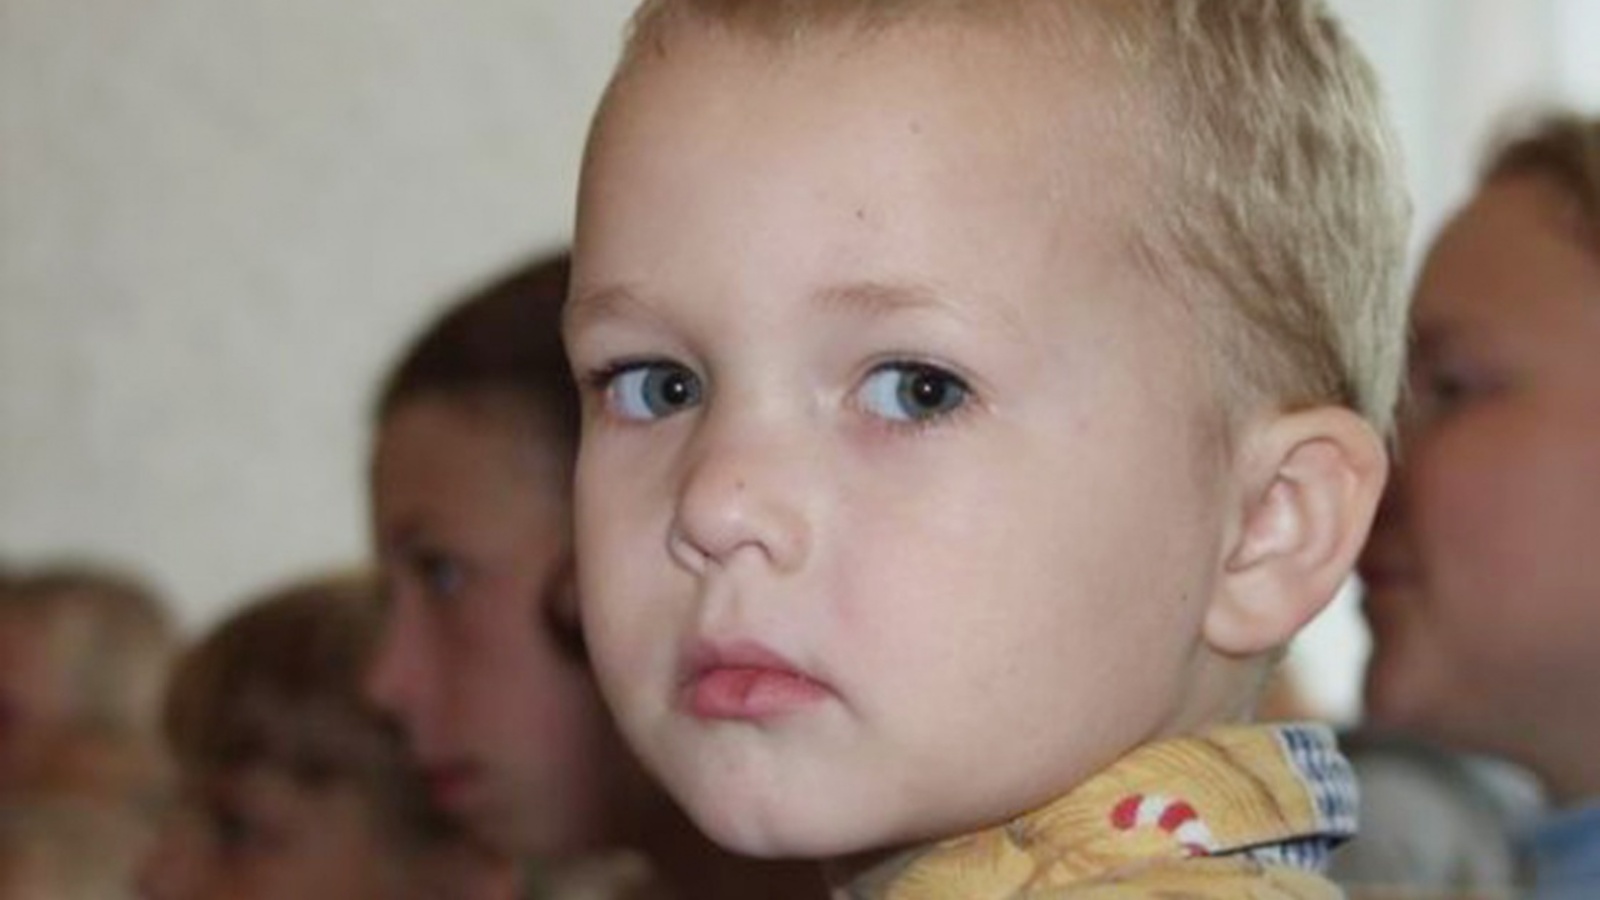 В России стартовала социальная кампания о том, как приемные дети становятся родными